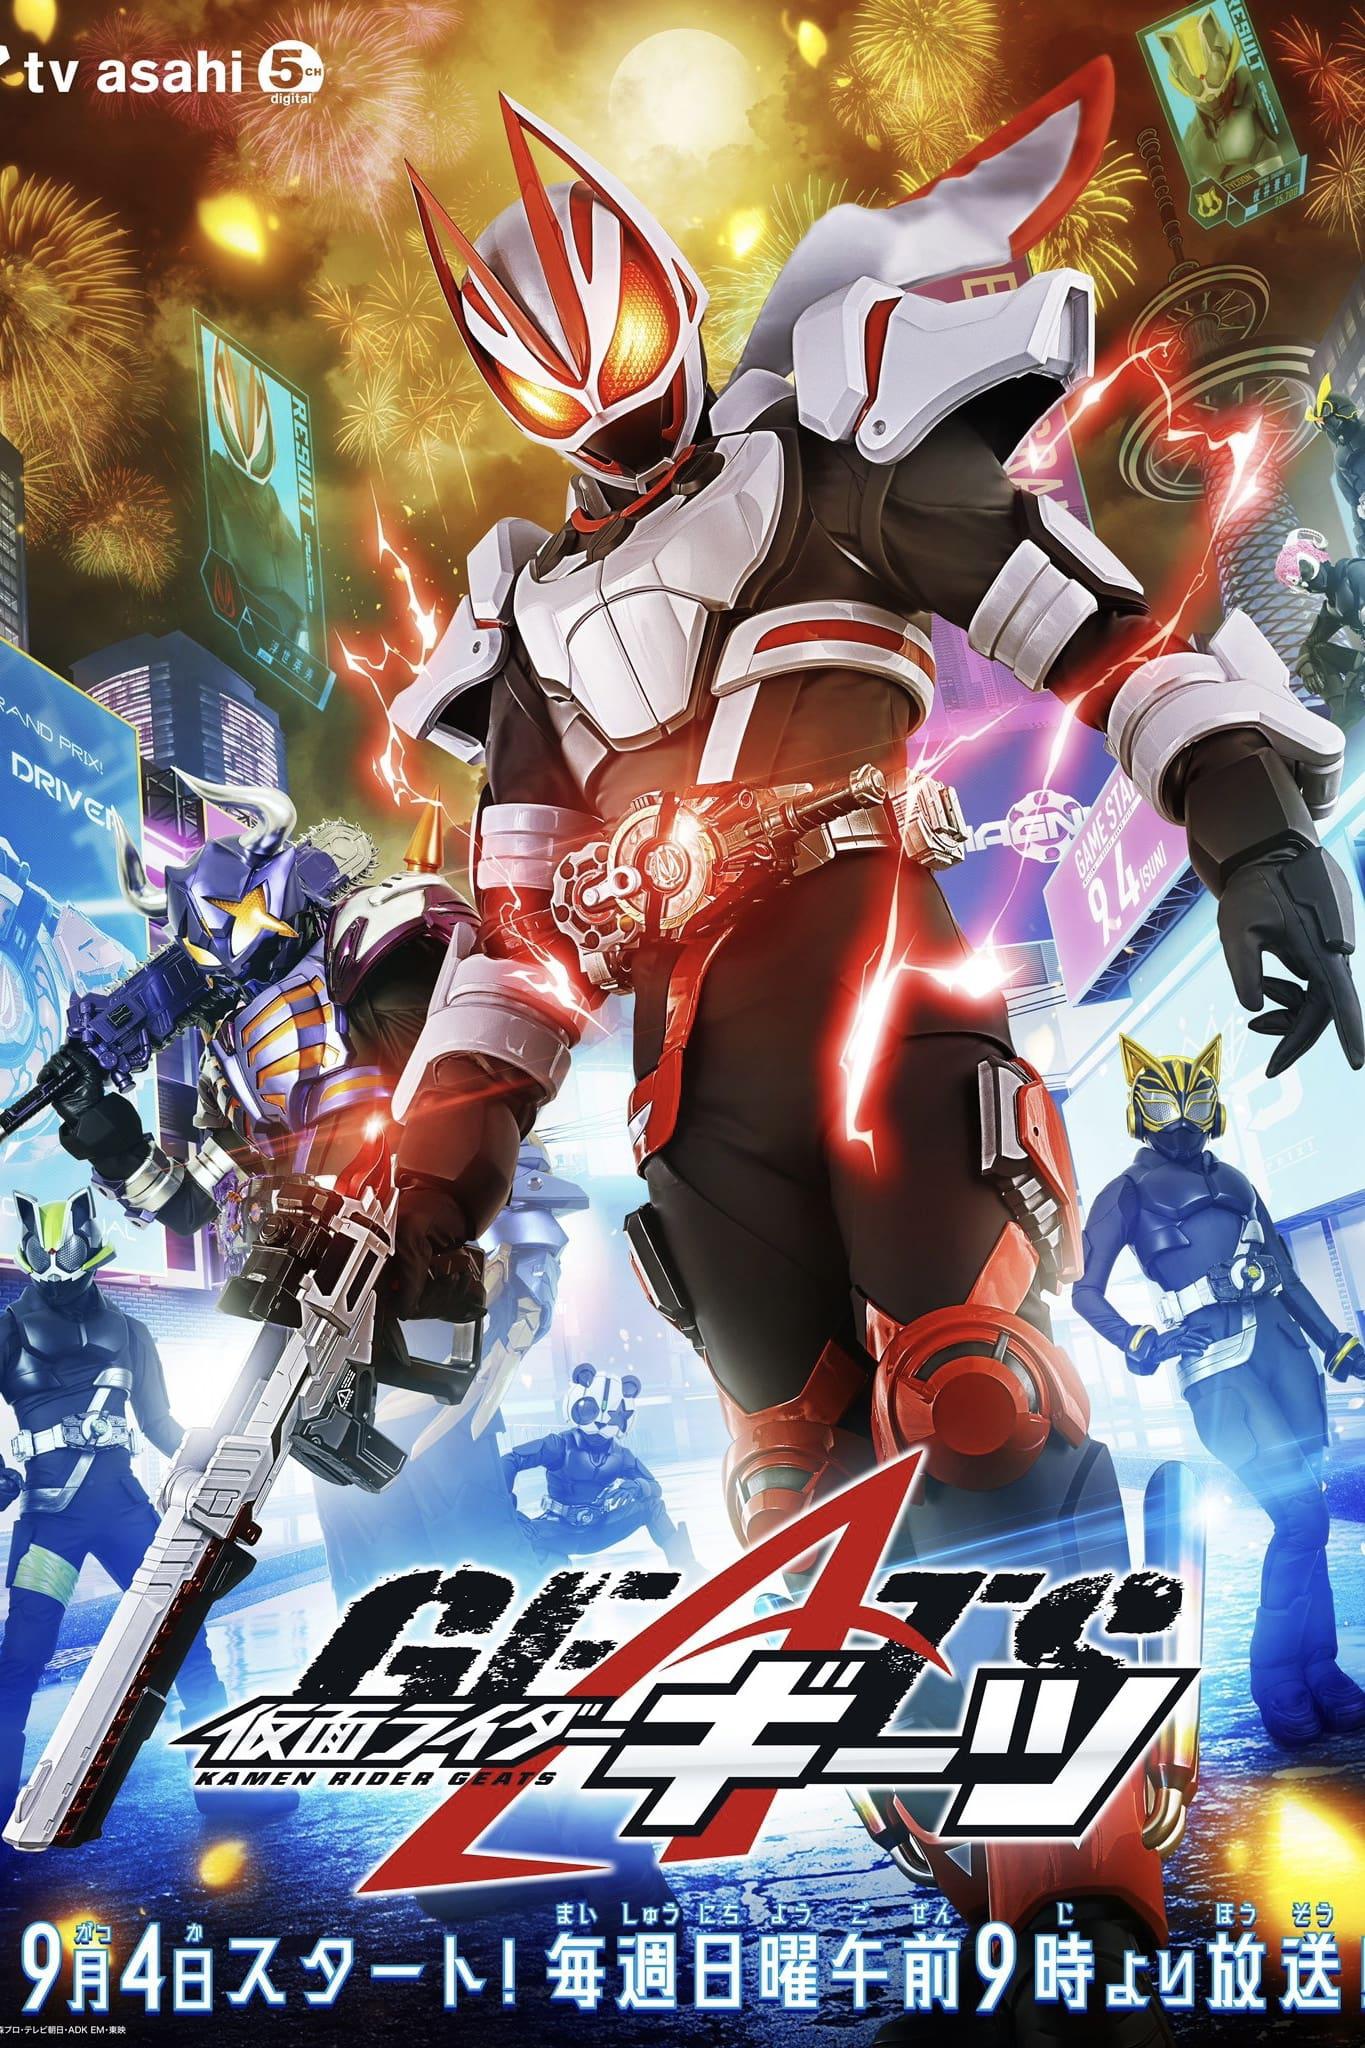 TV ratings for Kamen Rider Geats (仮面ライダーギーツ) in Portugal. TV Asahi TV series